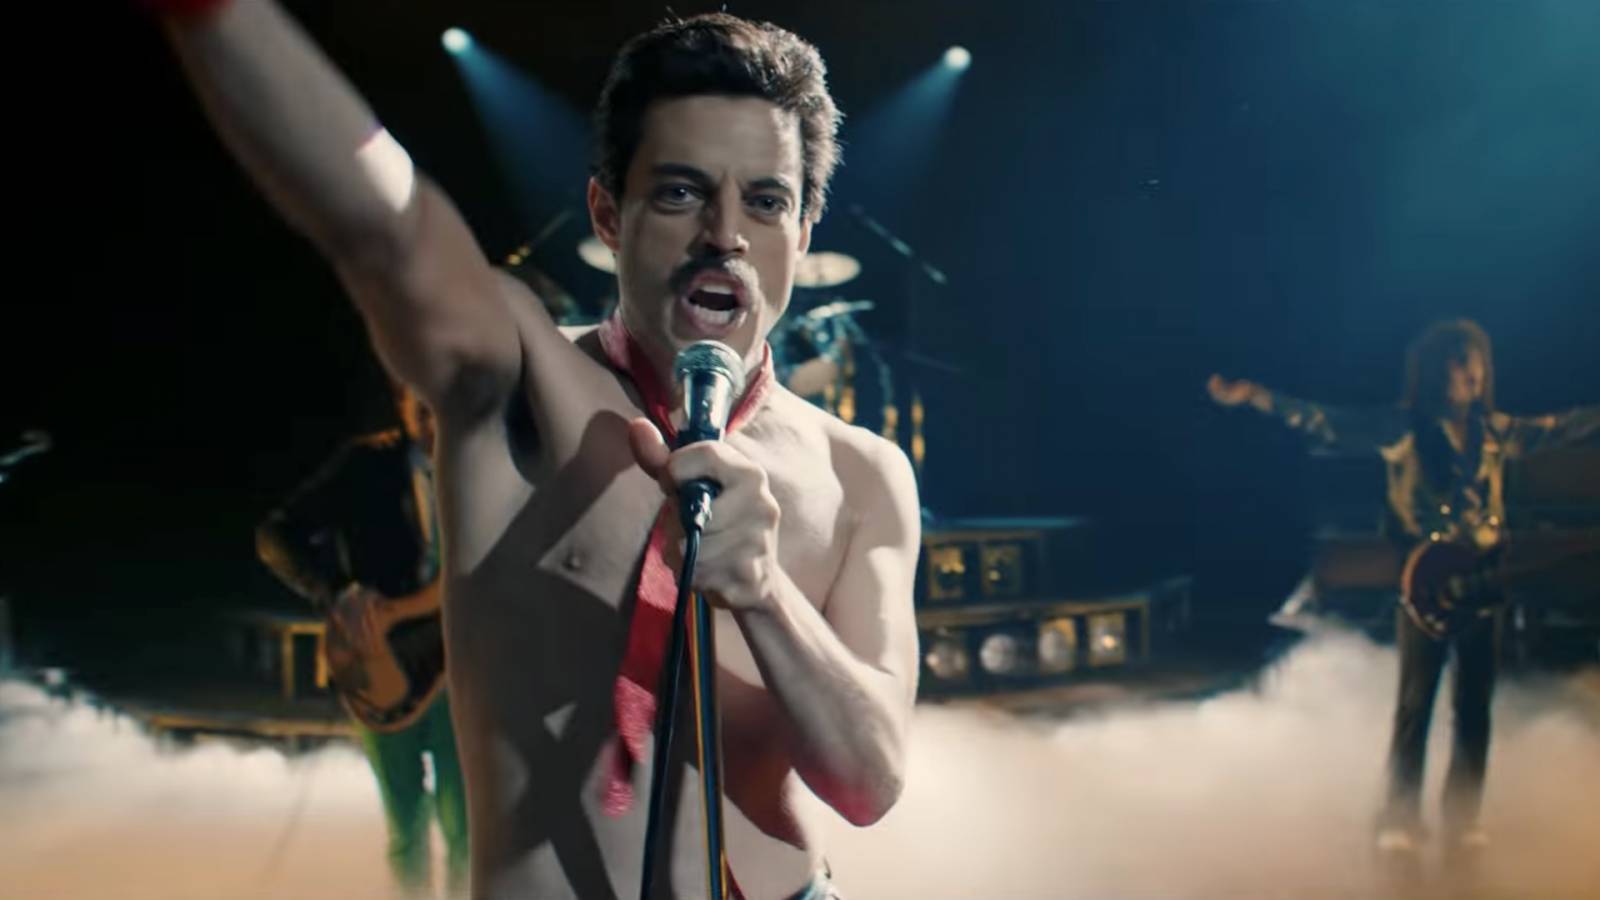 RECENZE: Filmový trhák Bohemian Rhapsody na DVD nenabízí mnoho neviděného |  iREPORT – music&style magazine